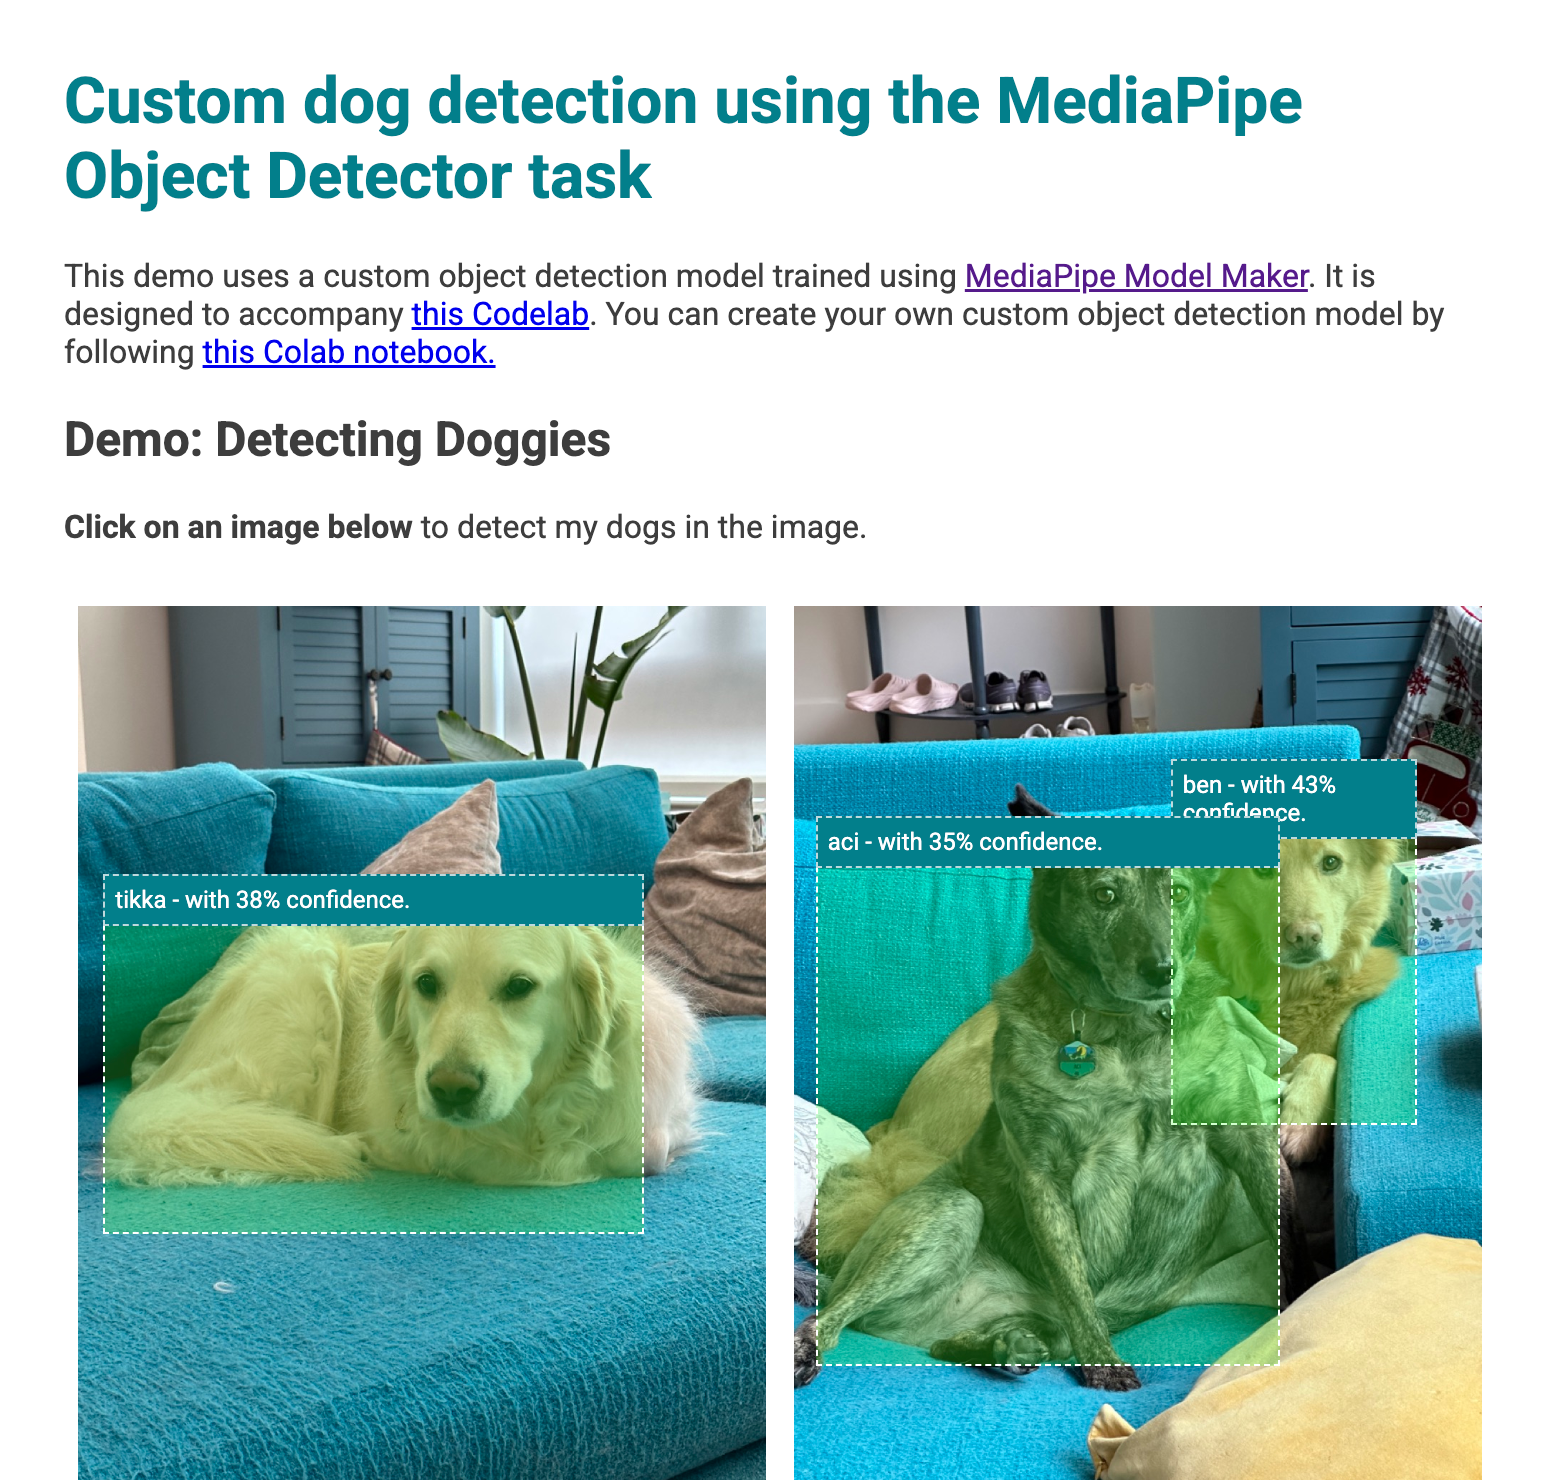 Una vista previa de la app web con cuadros delimitadores sobre los perros que se detectaron en las imágenes